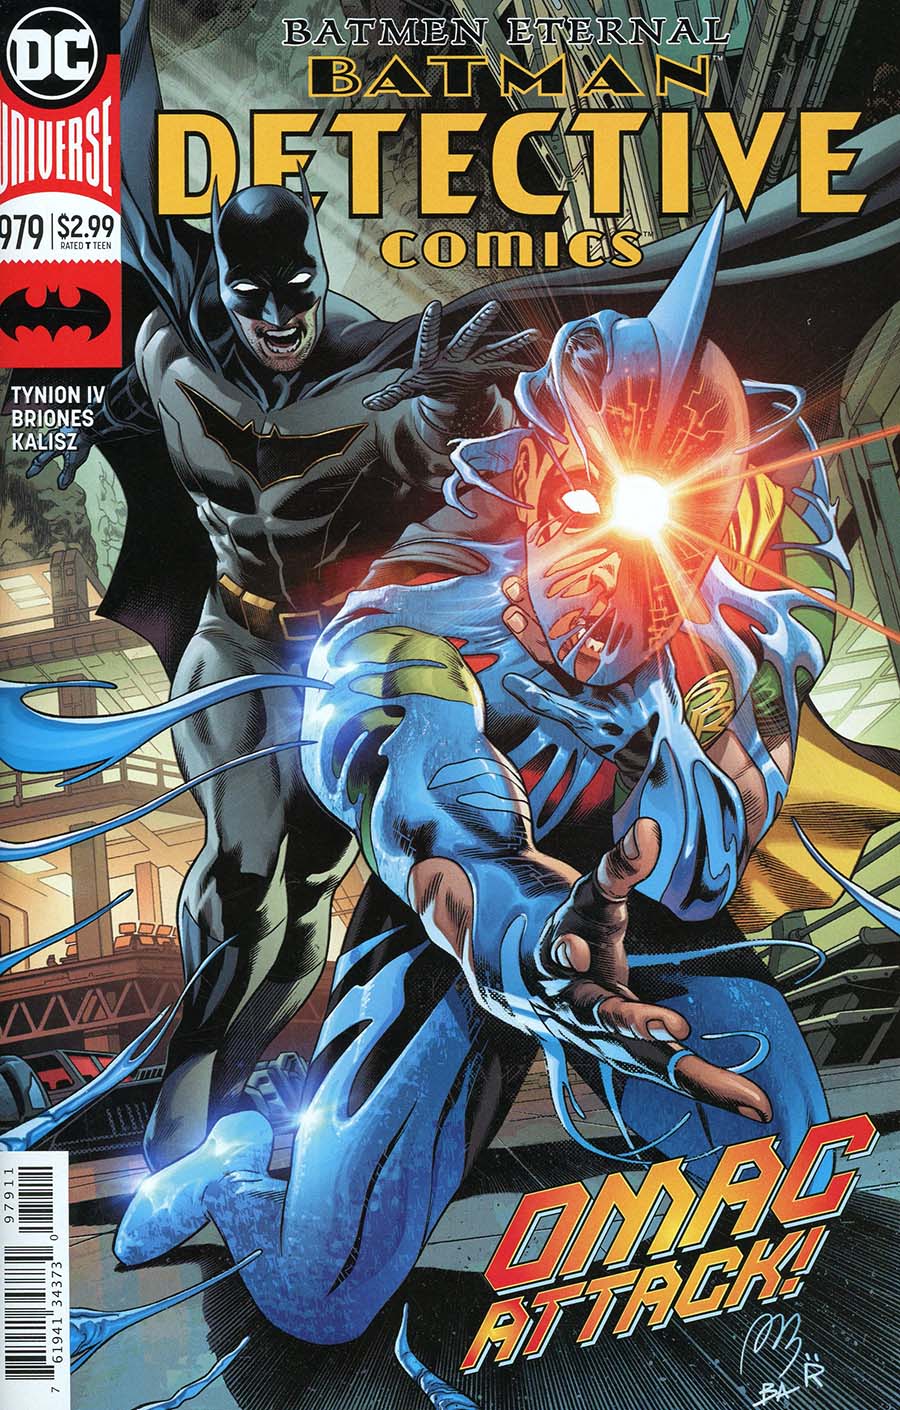 Detective Comics Vol 2 #979 Cover A Regular Alvaro Martinez & Raul Fernandez Cover